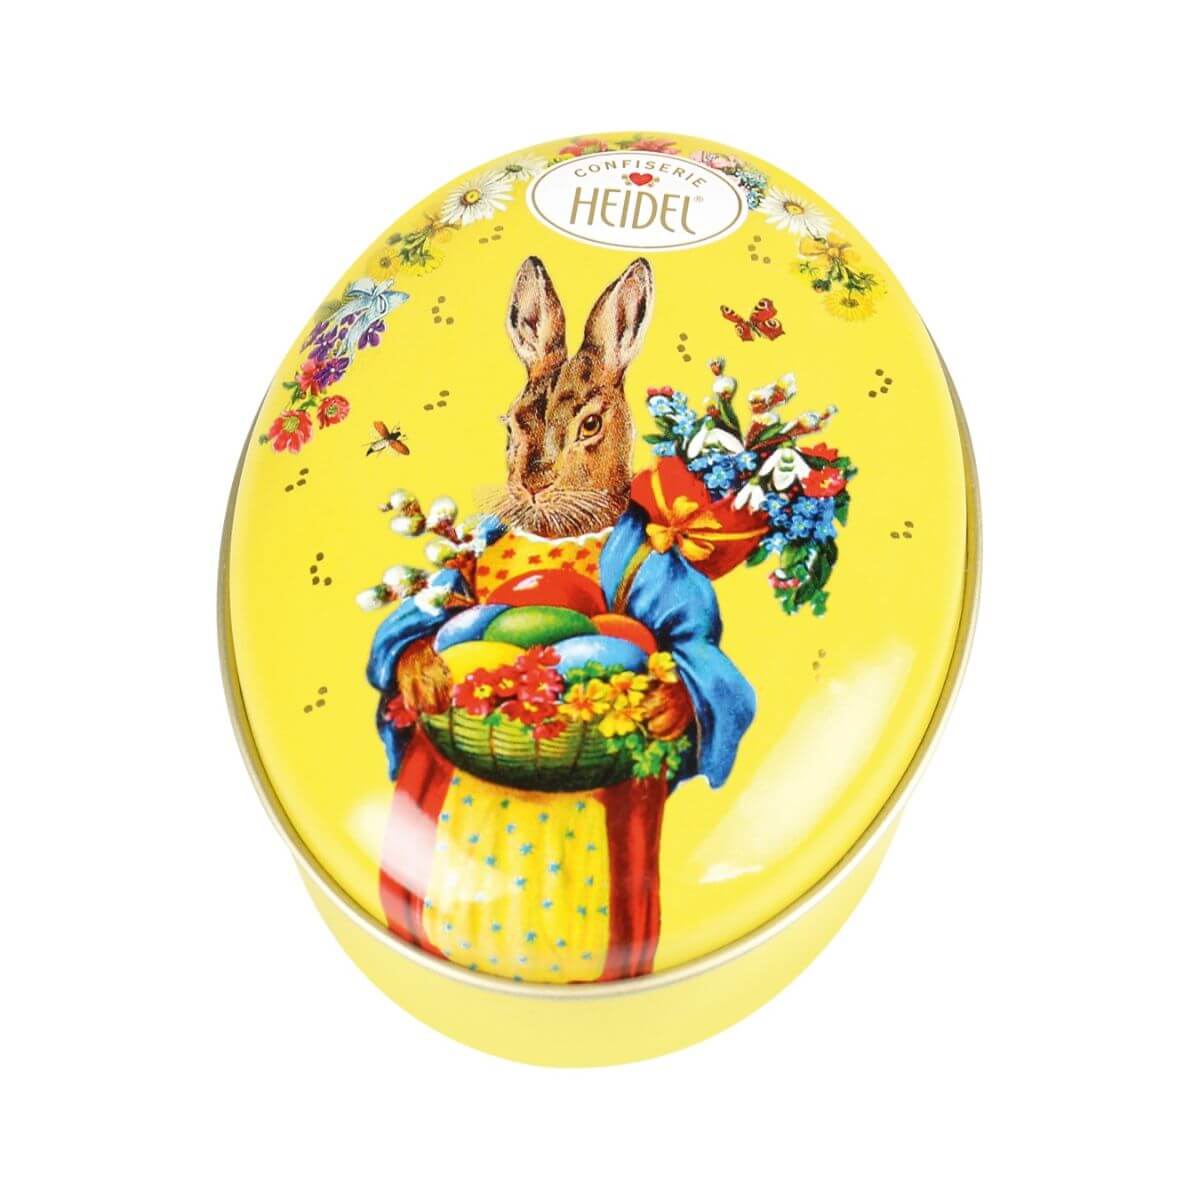 Heidel Easter Nostalgia Praline Chocolates Girl Bunny Tin